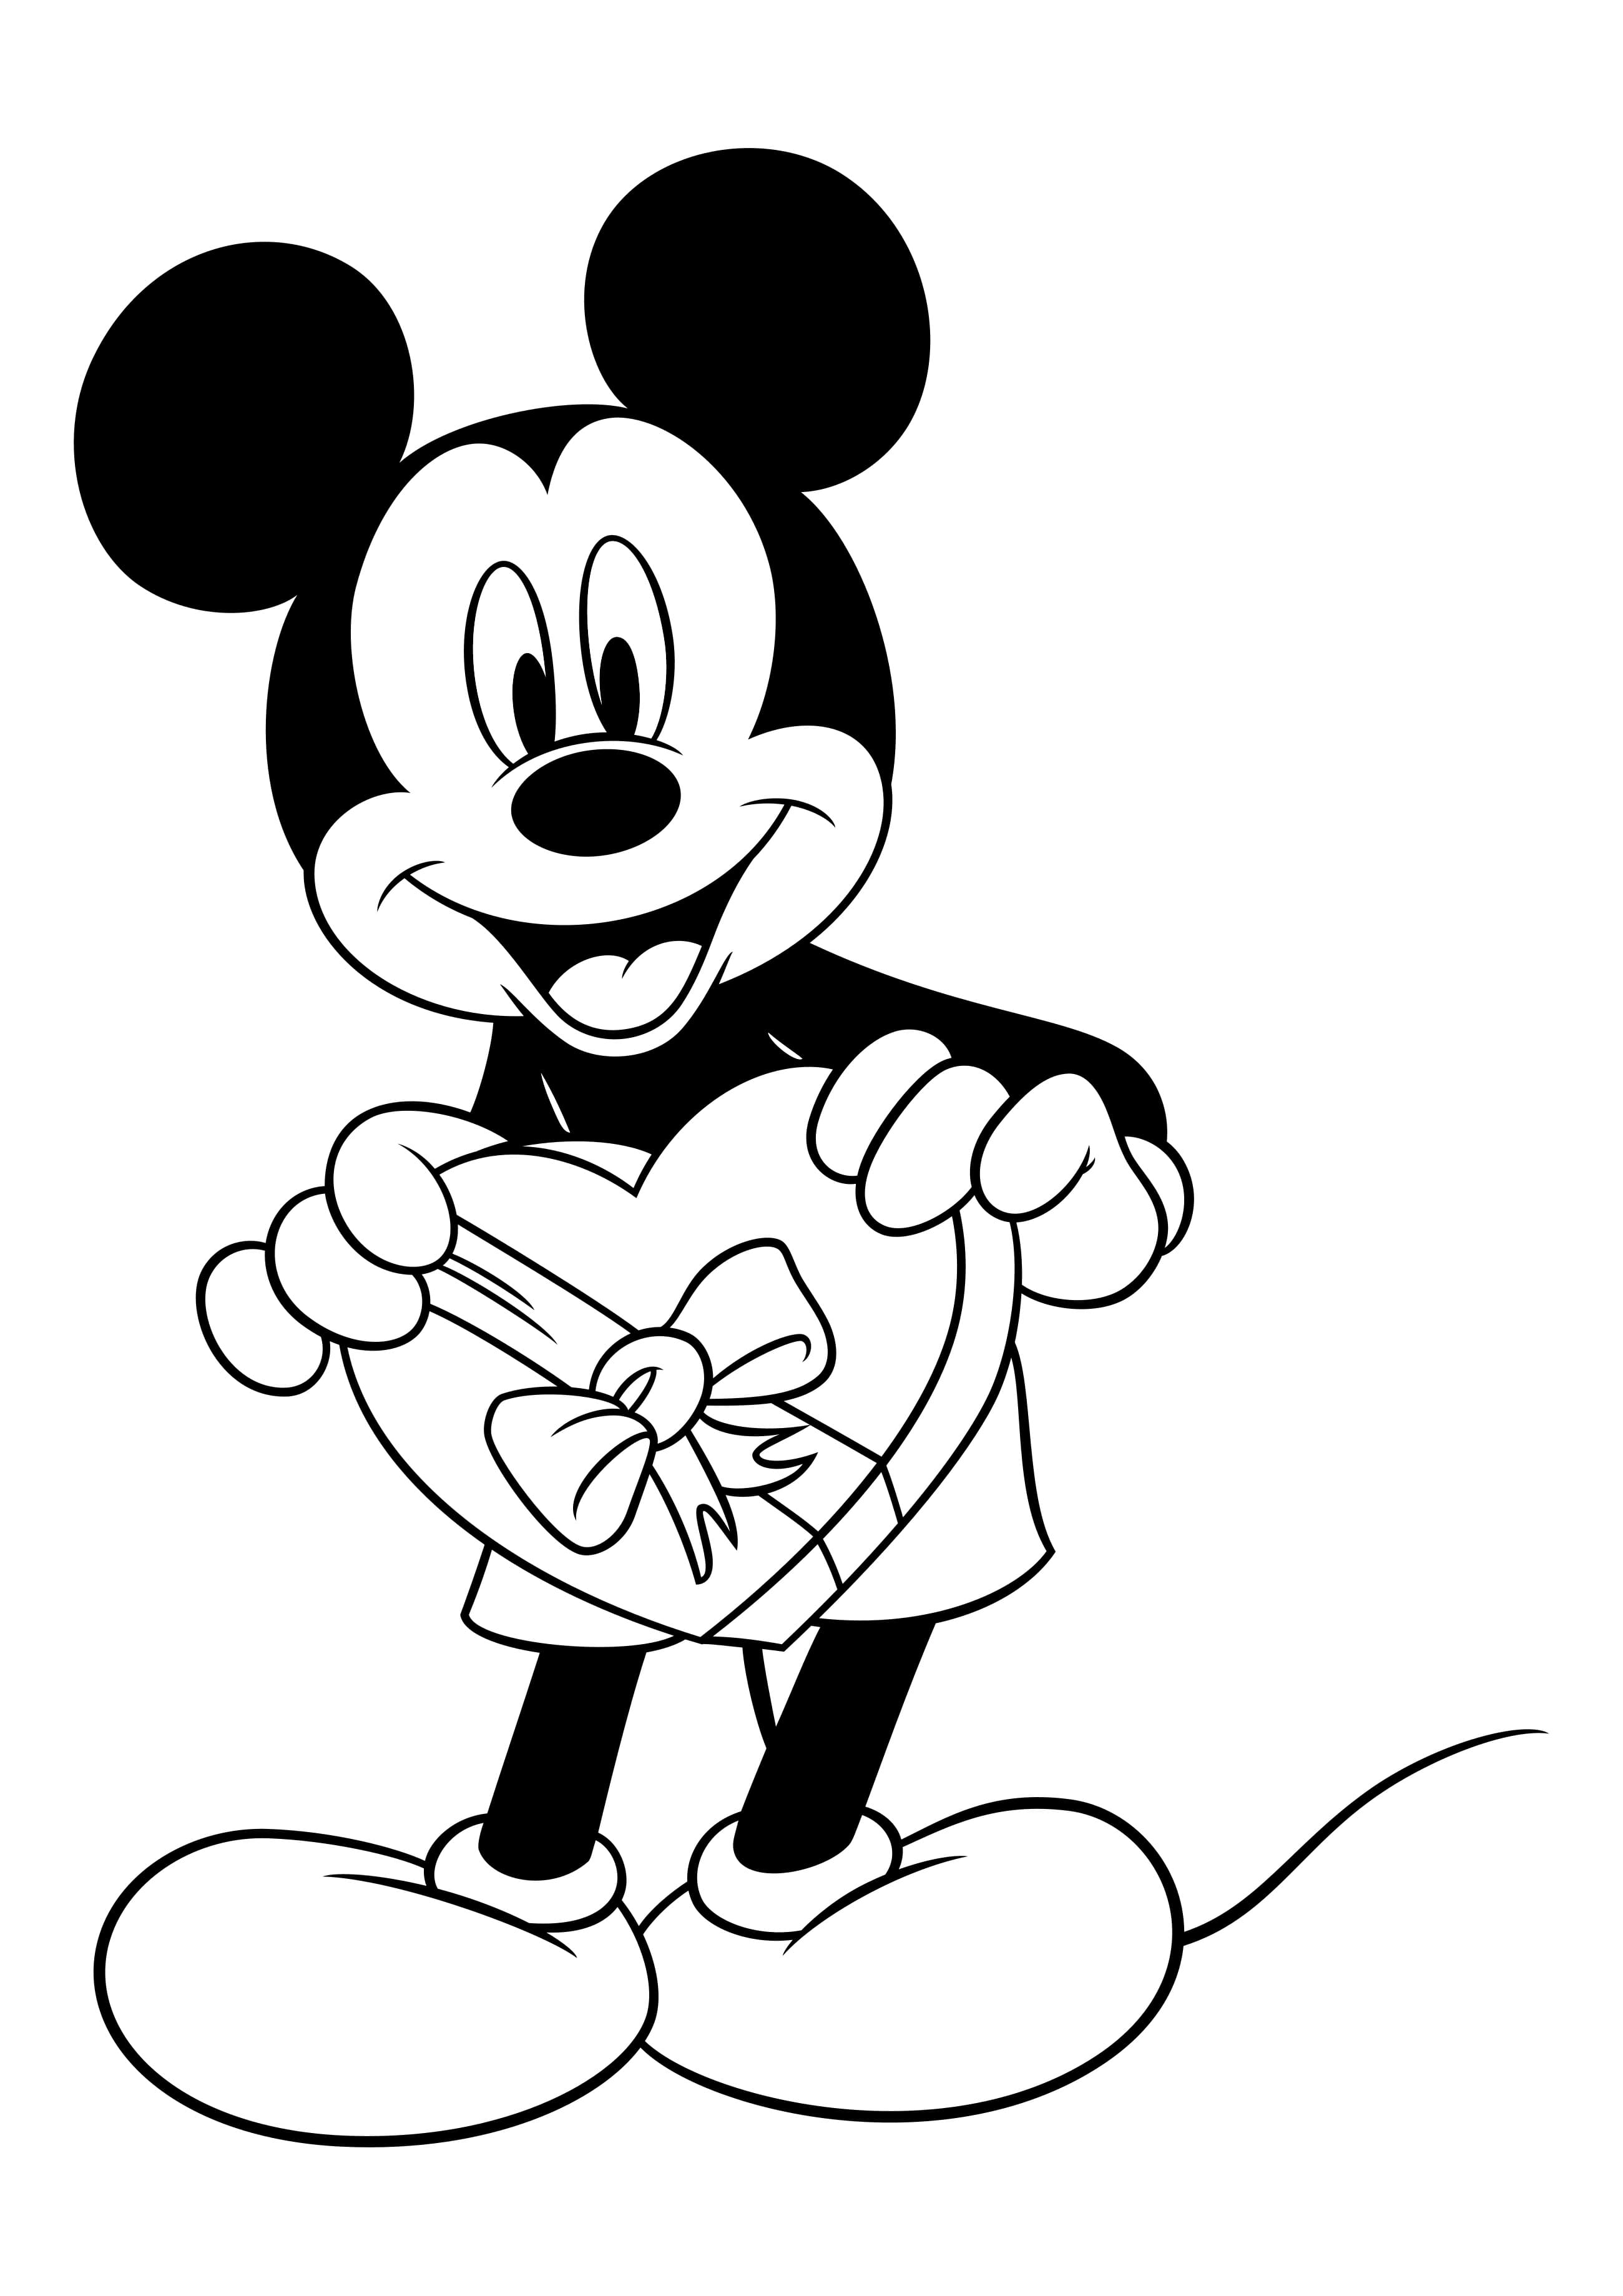 Coloriage Saint-Valentin Mickey Mouse donne des bonbons Minnie Mouse